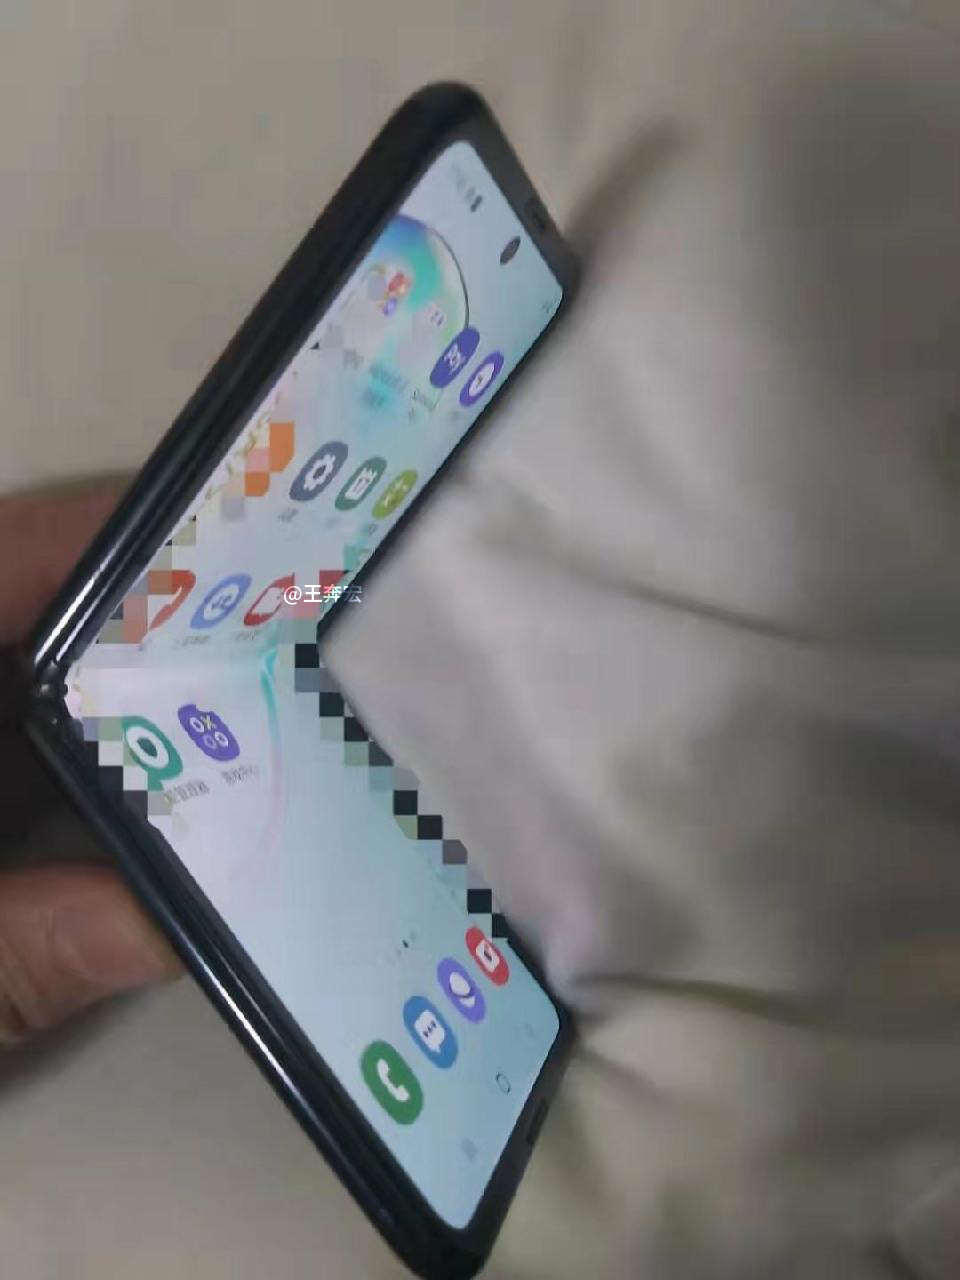 Samsungin taittuvanäyttöinen simpukkapuhelin Galaxy Z Flip.